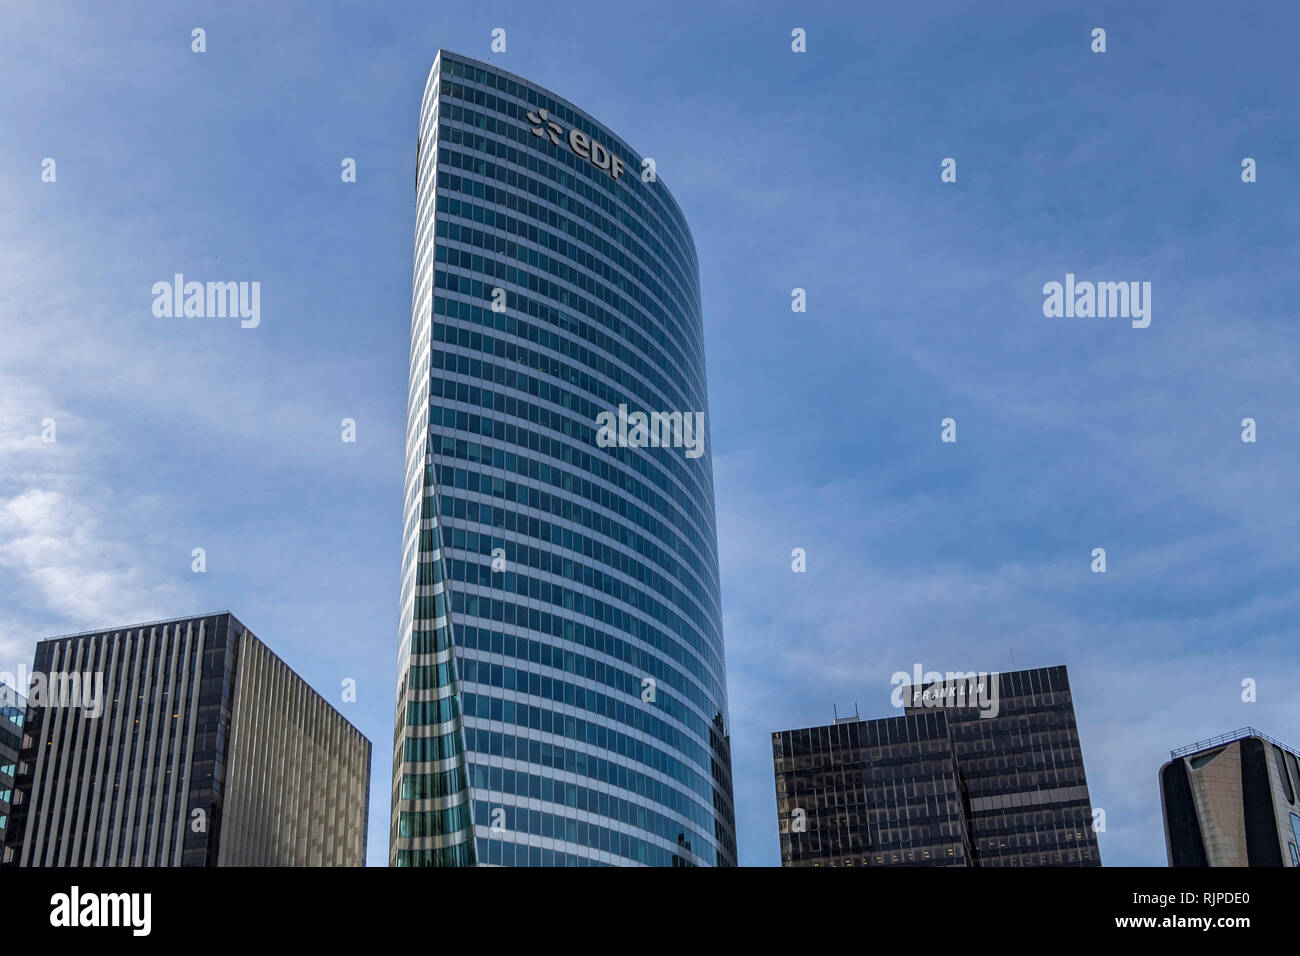 La Tour EDF, siège de l'entreprise énergétique française ,il est le plus haut gratte-ciel construit à La Défense, du quartier financier et d'affaires de Paris Banque D'Images